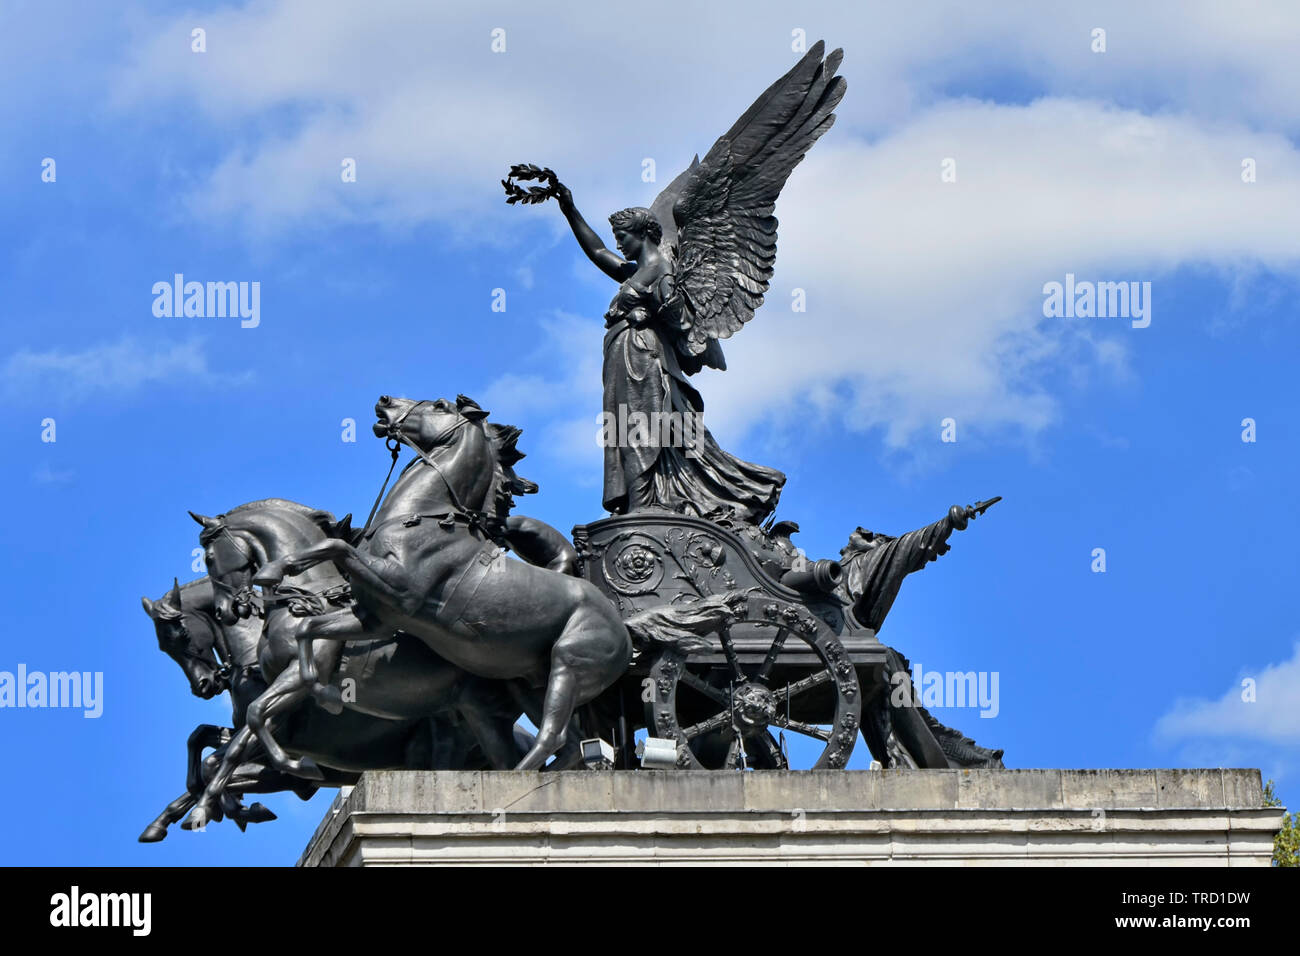 Close up view de la Quadriga statue en bronze de char au-dessus de Wellington ou constitution d'un arc de triomphe à Hyde Park Corner London England UK Banque D'Images